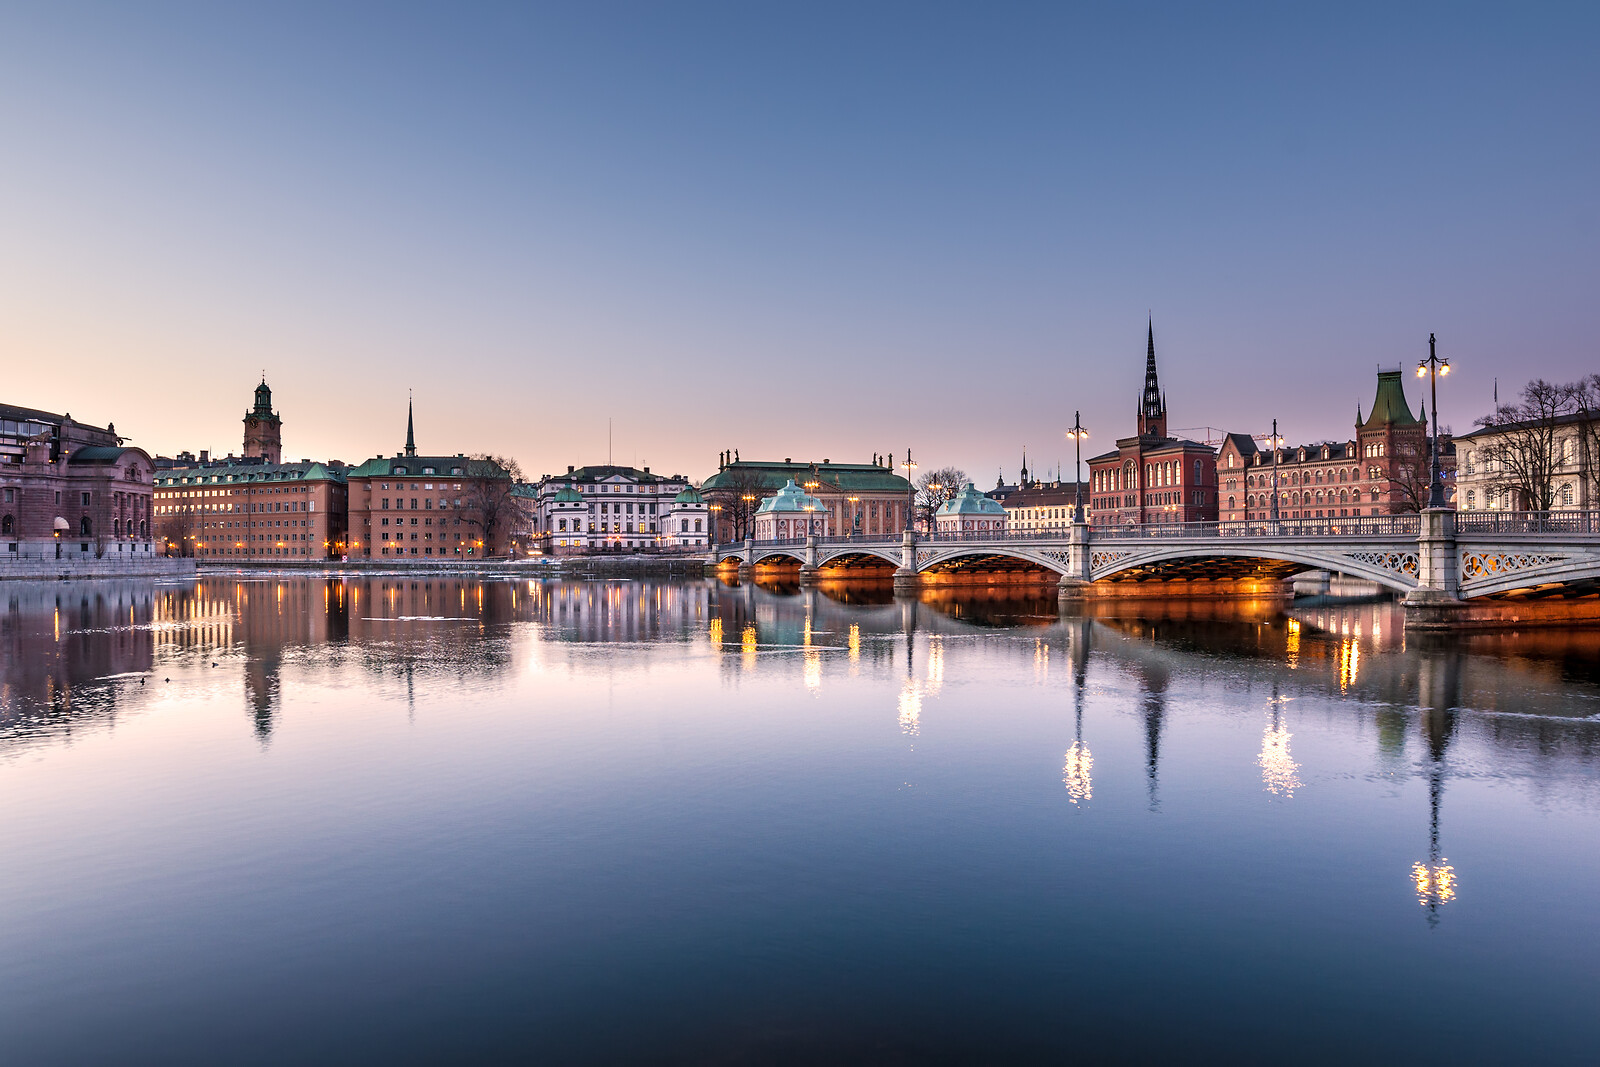 Se 3 Dages Ophold I Stockholm - Rejse og Ophold - GO DREAM hos GO DREAM DK